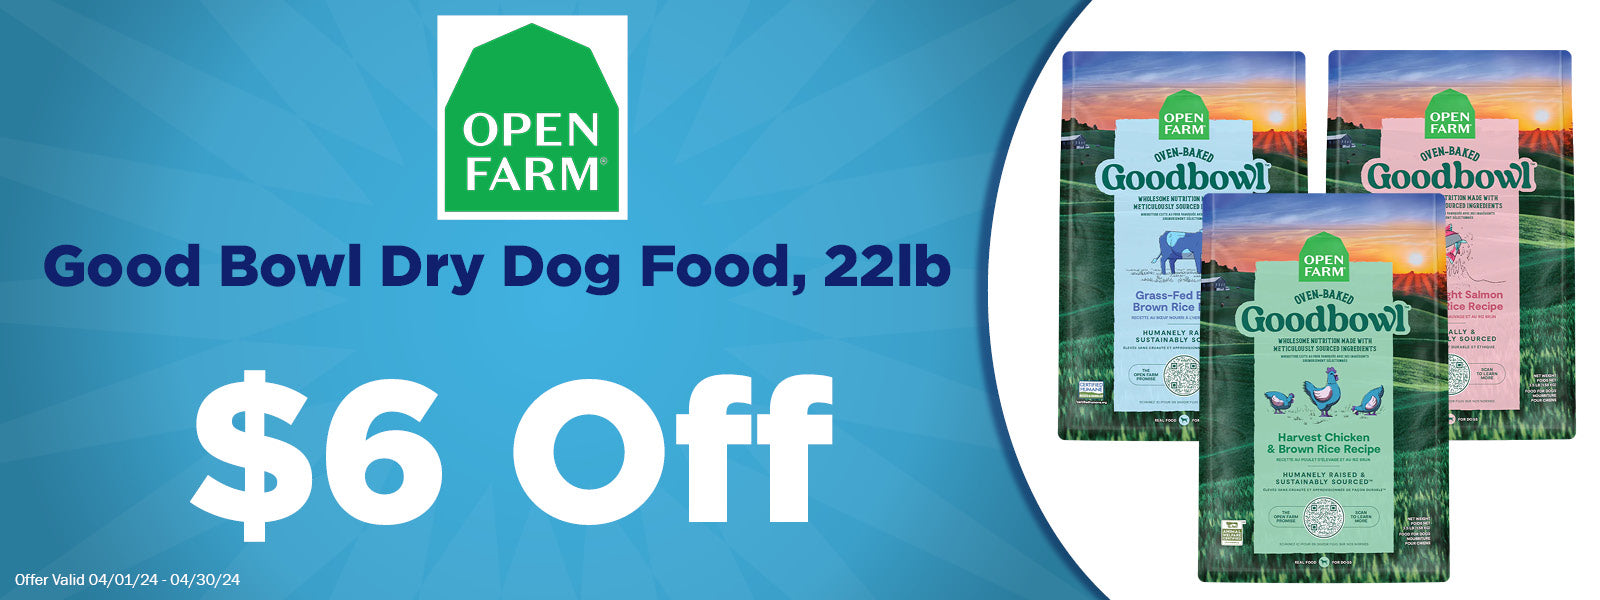 Open Farm Good Bowl Dog Food $6 Off 22lb+